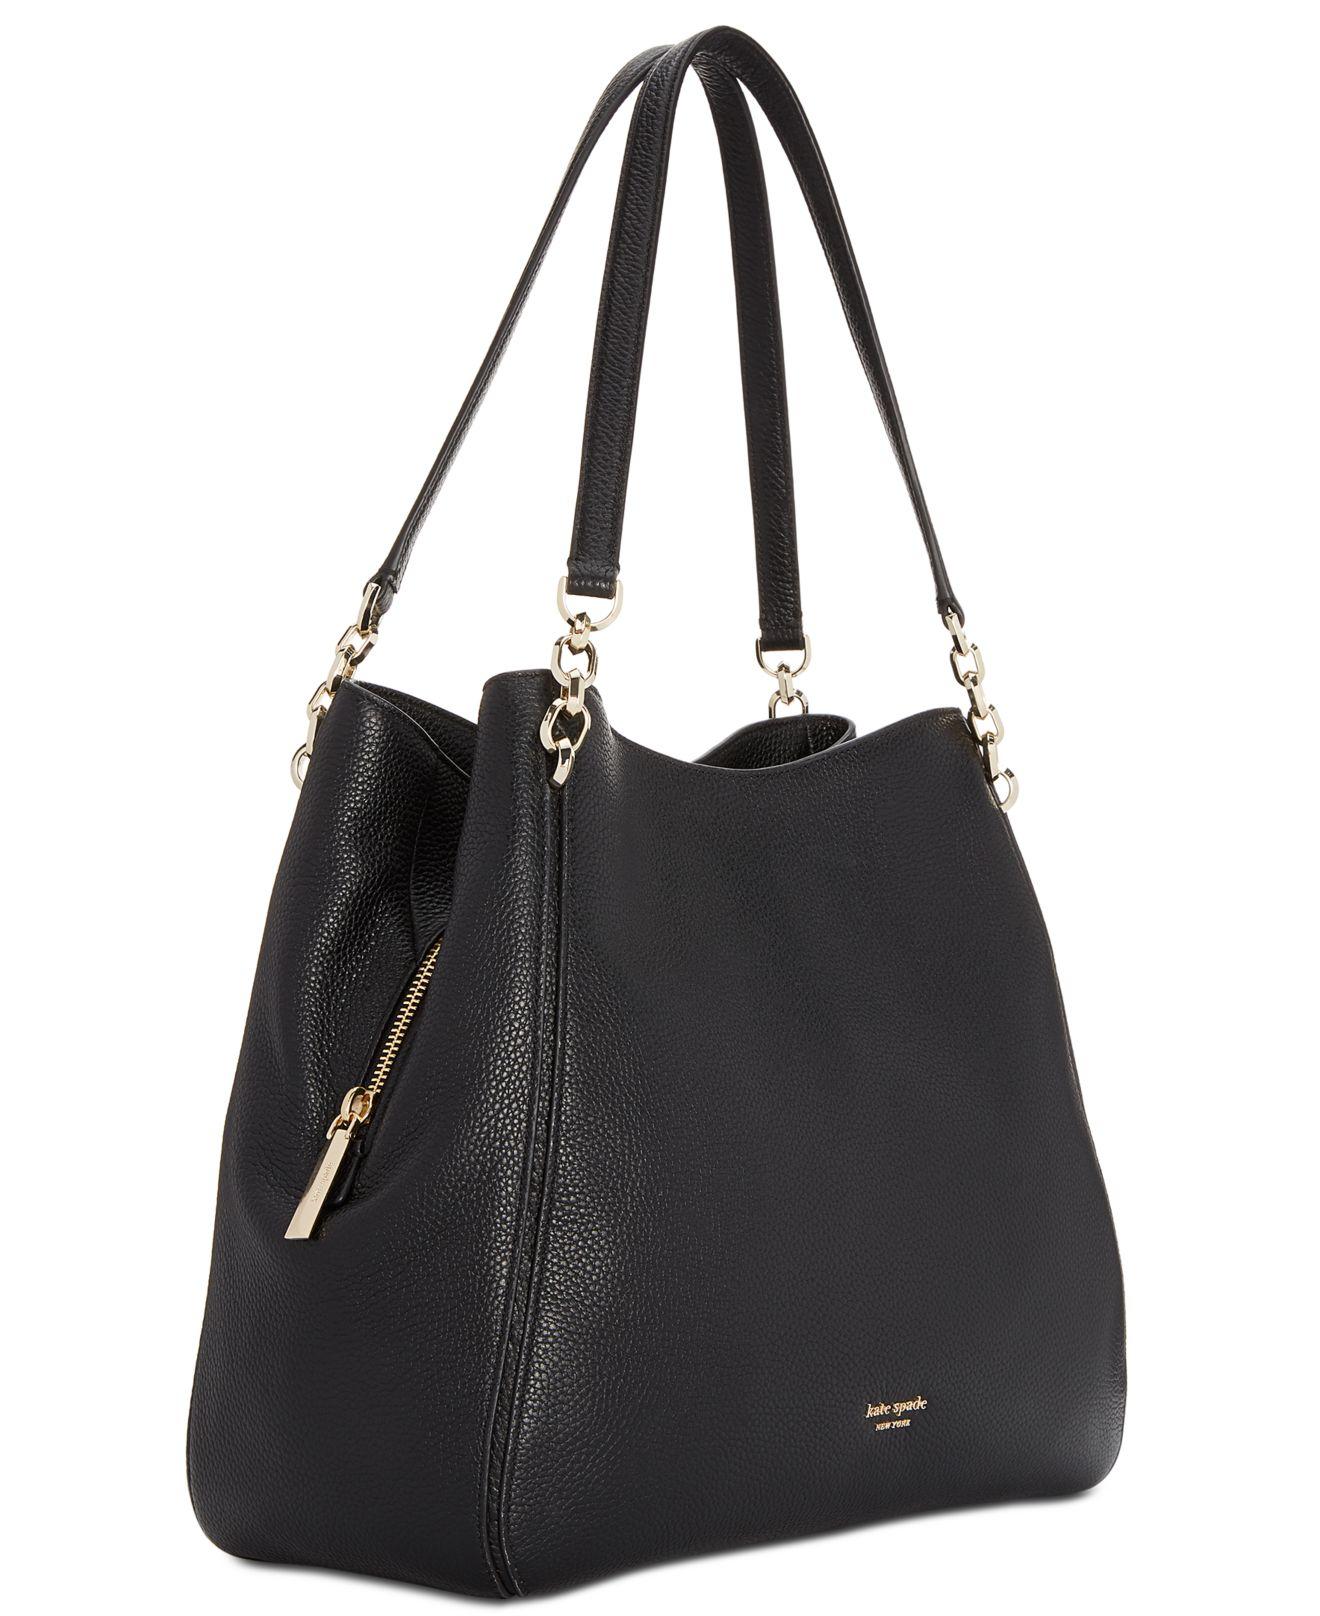 Kate Spade Hailey Large Leather Shoulder Bag in Black/Gold (Black) - Lyst